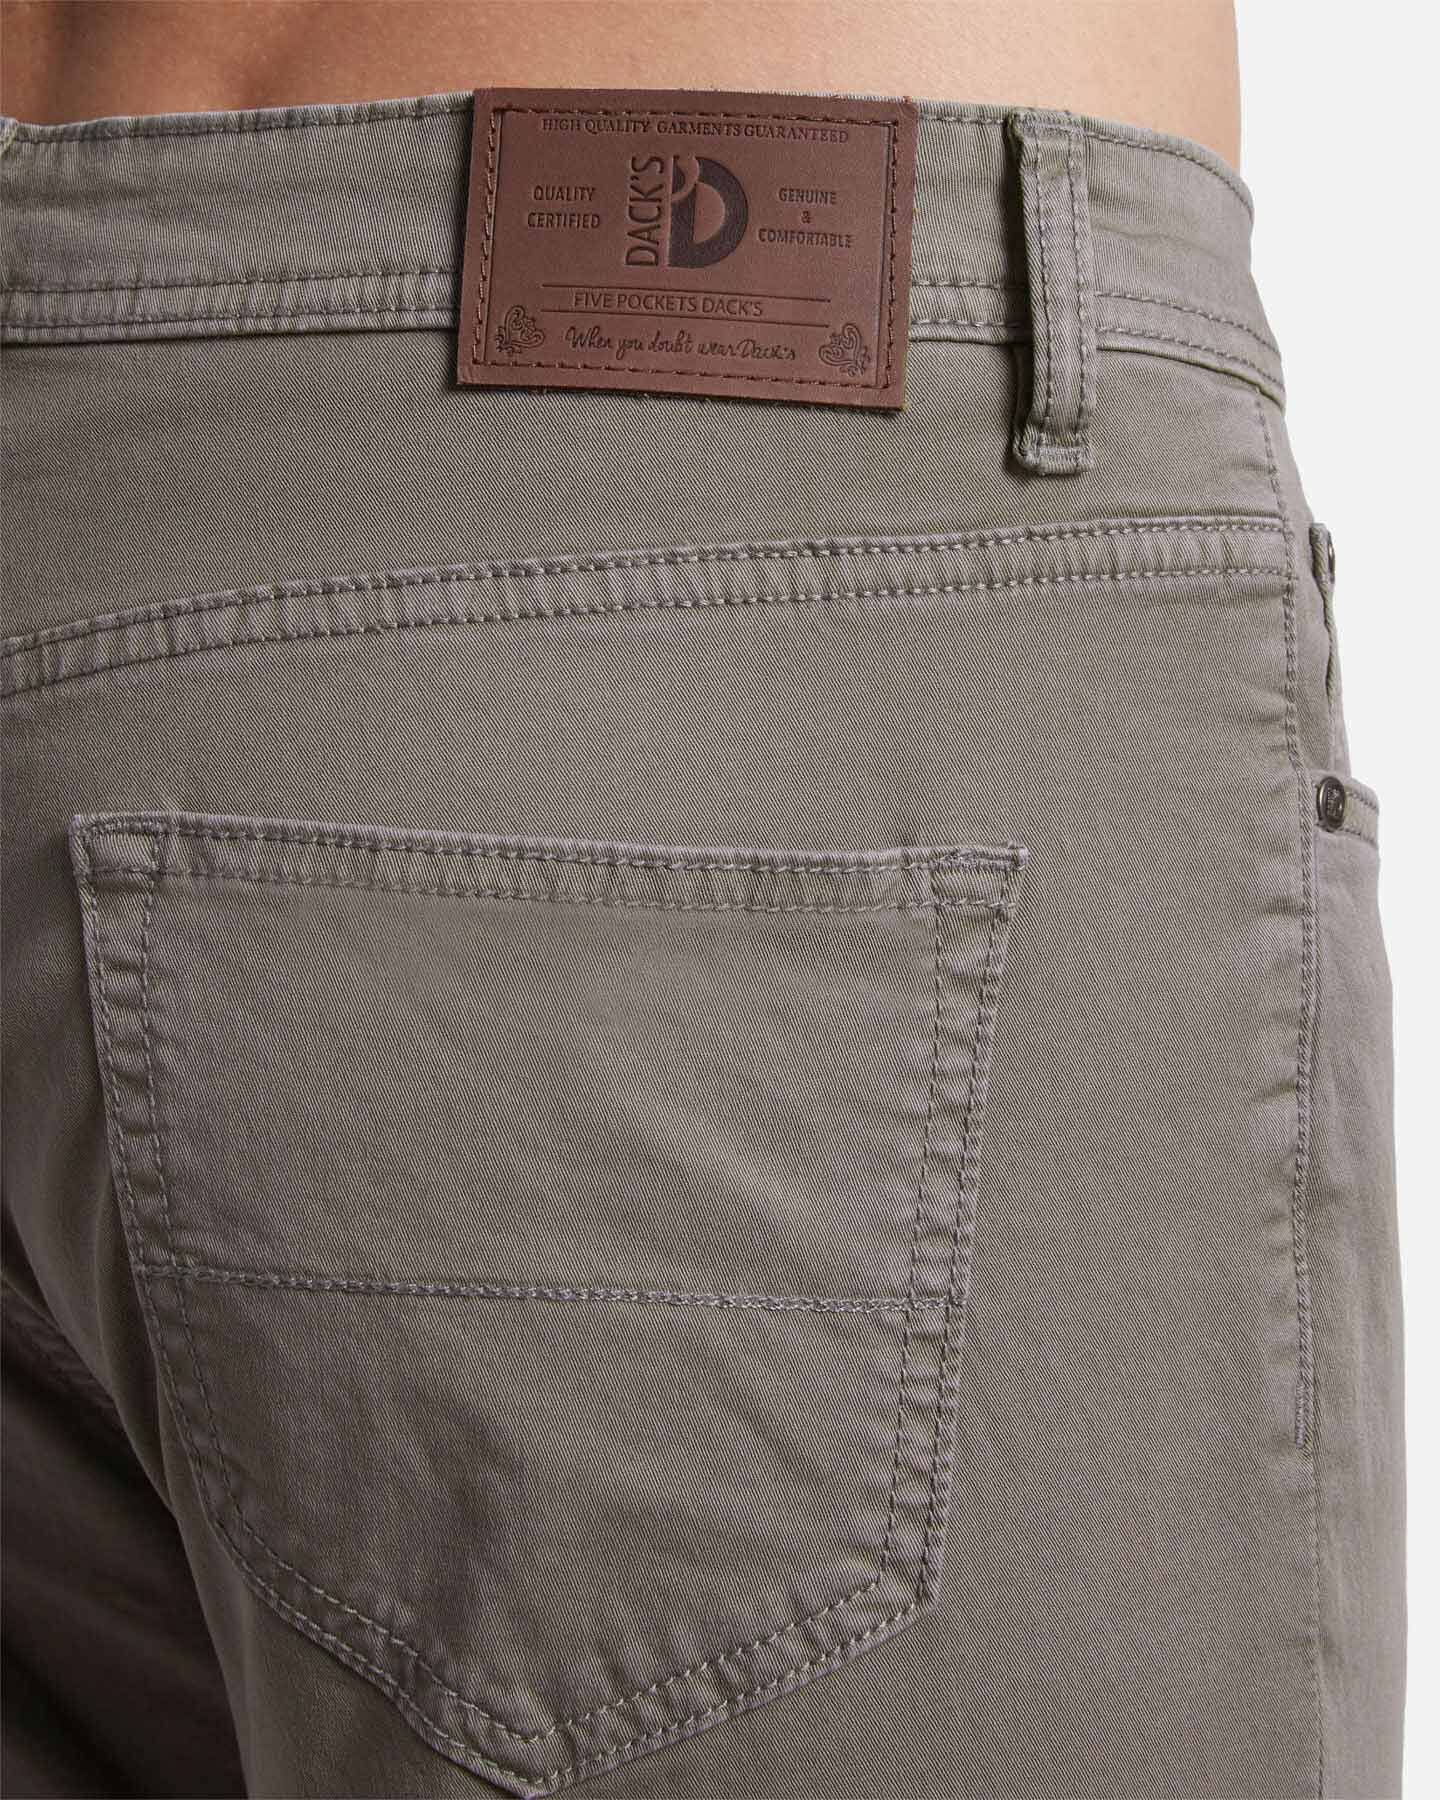  Pantalone DACK'S ESSENTIAL M S4129741|1115|44 scatto 3